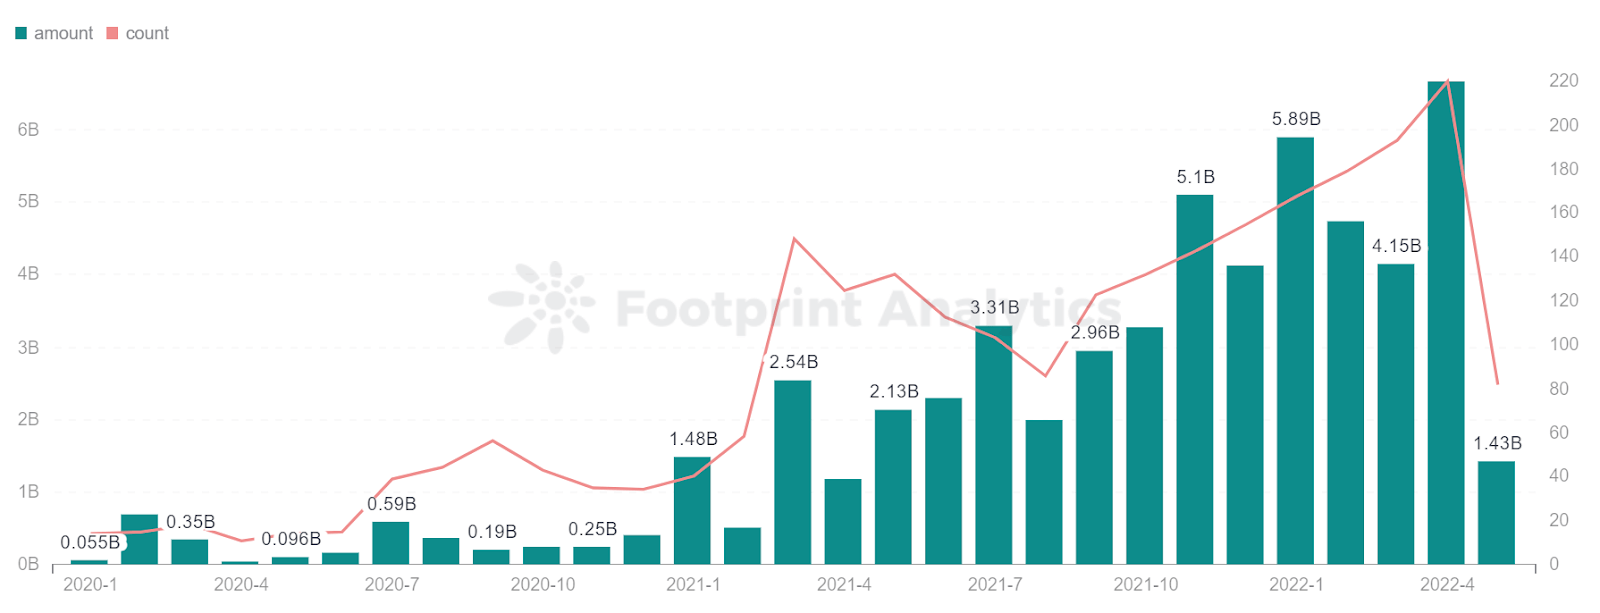 Footprint Analytics - Financement - Tendance mensuelle des investissements